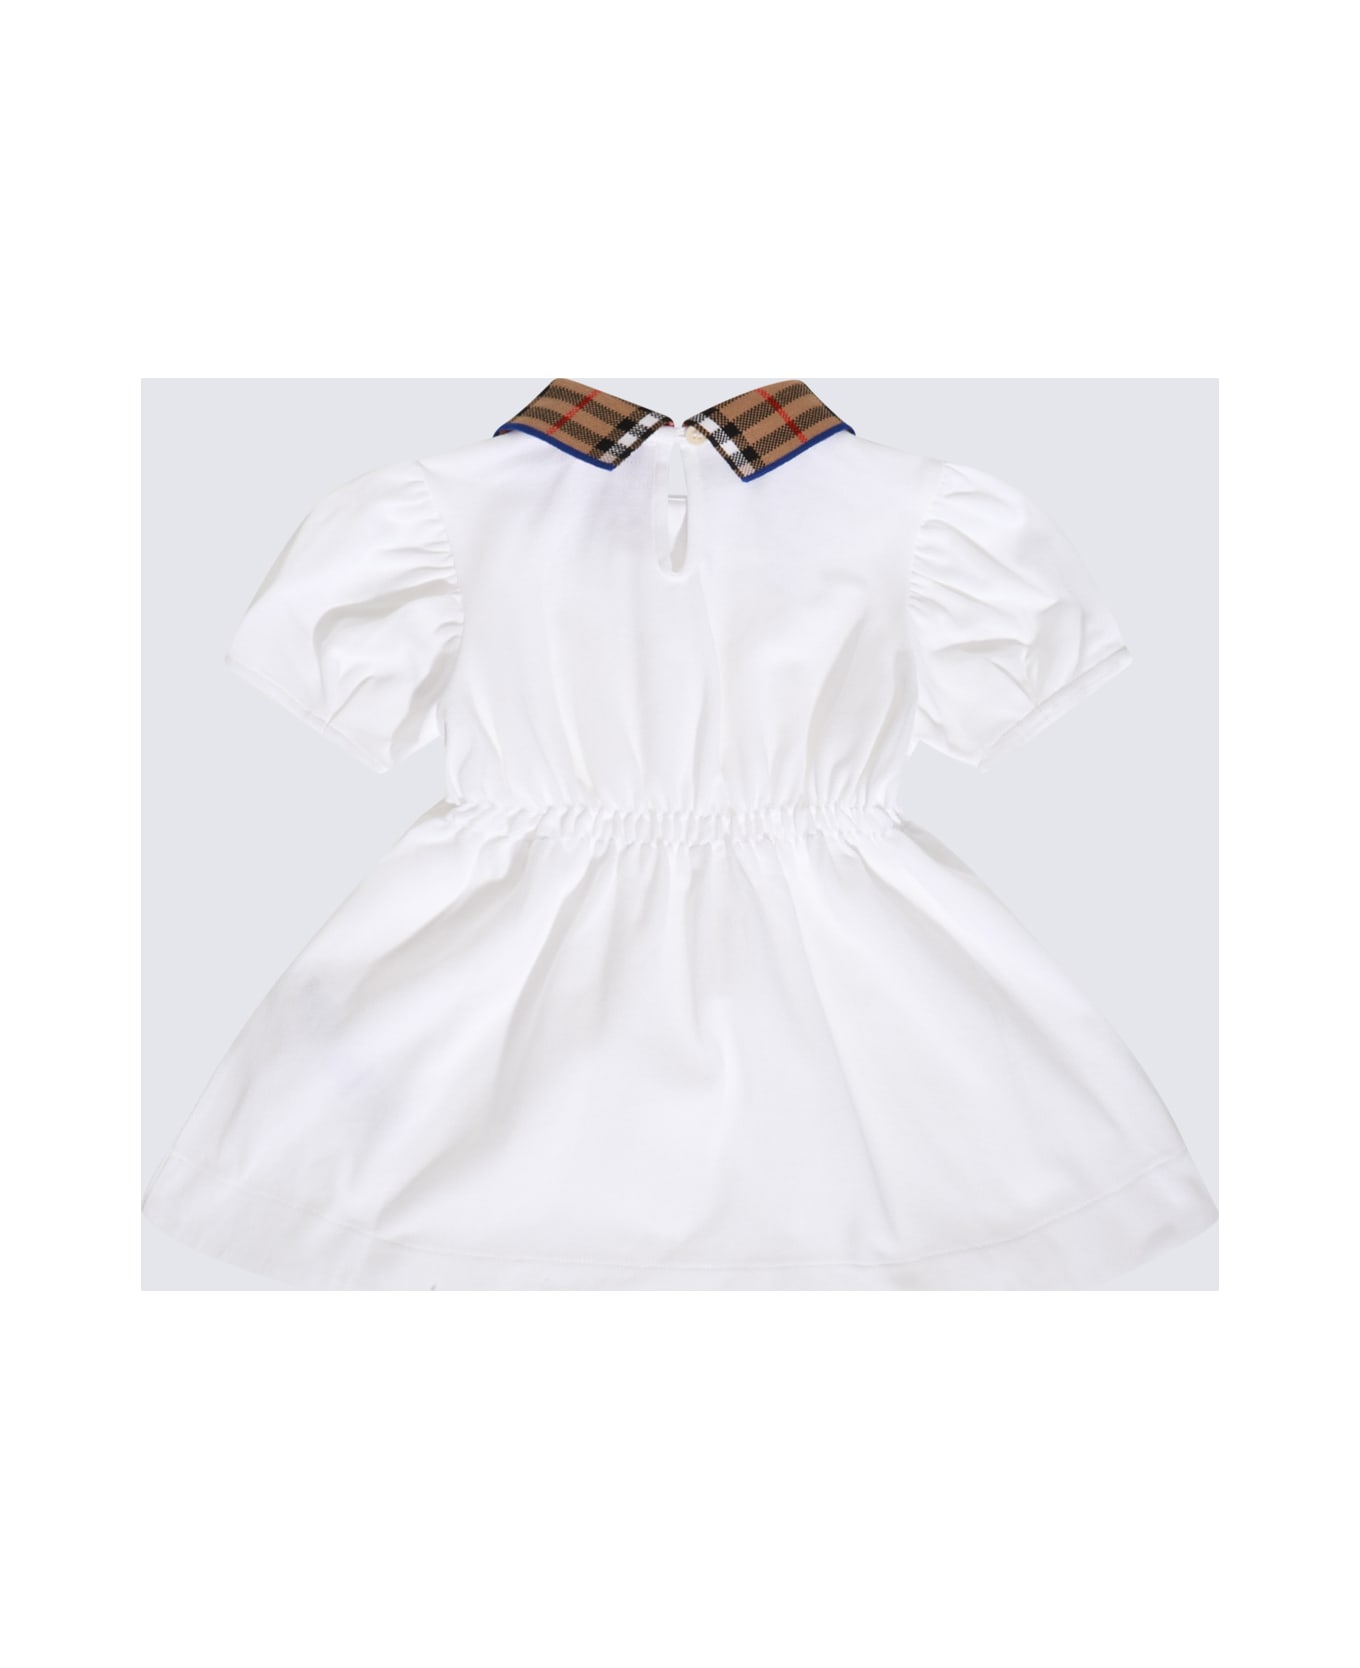 Burberry White Cotton Dress - White